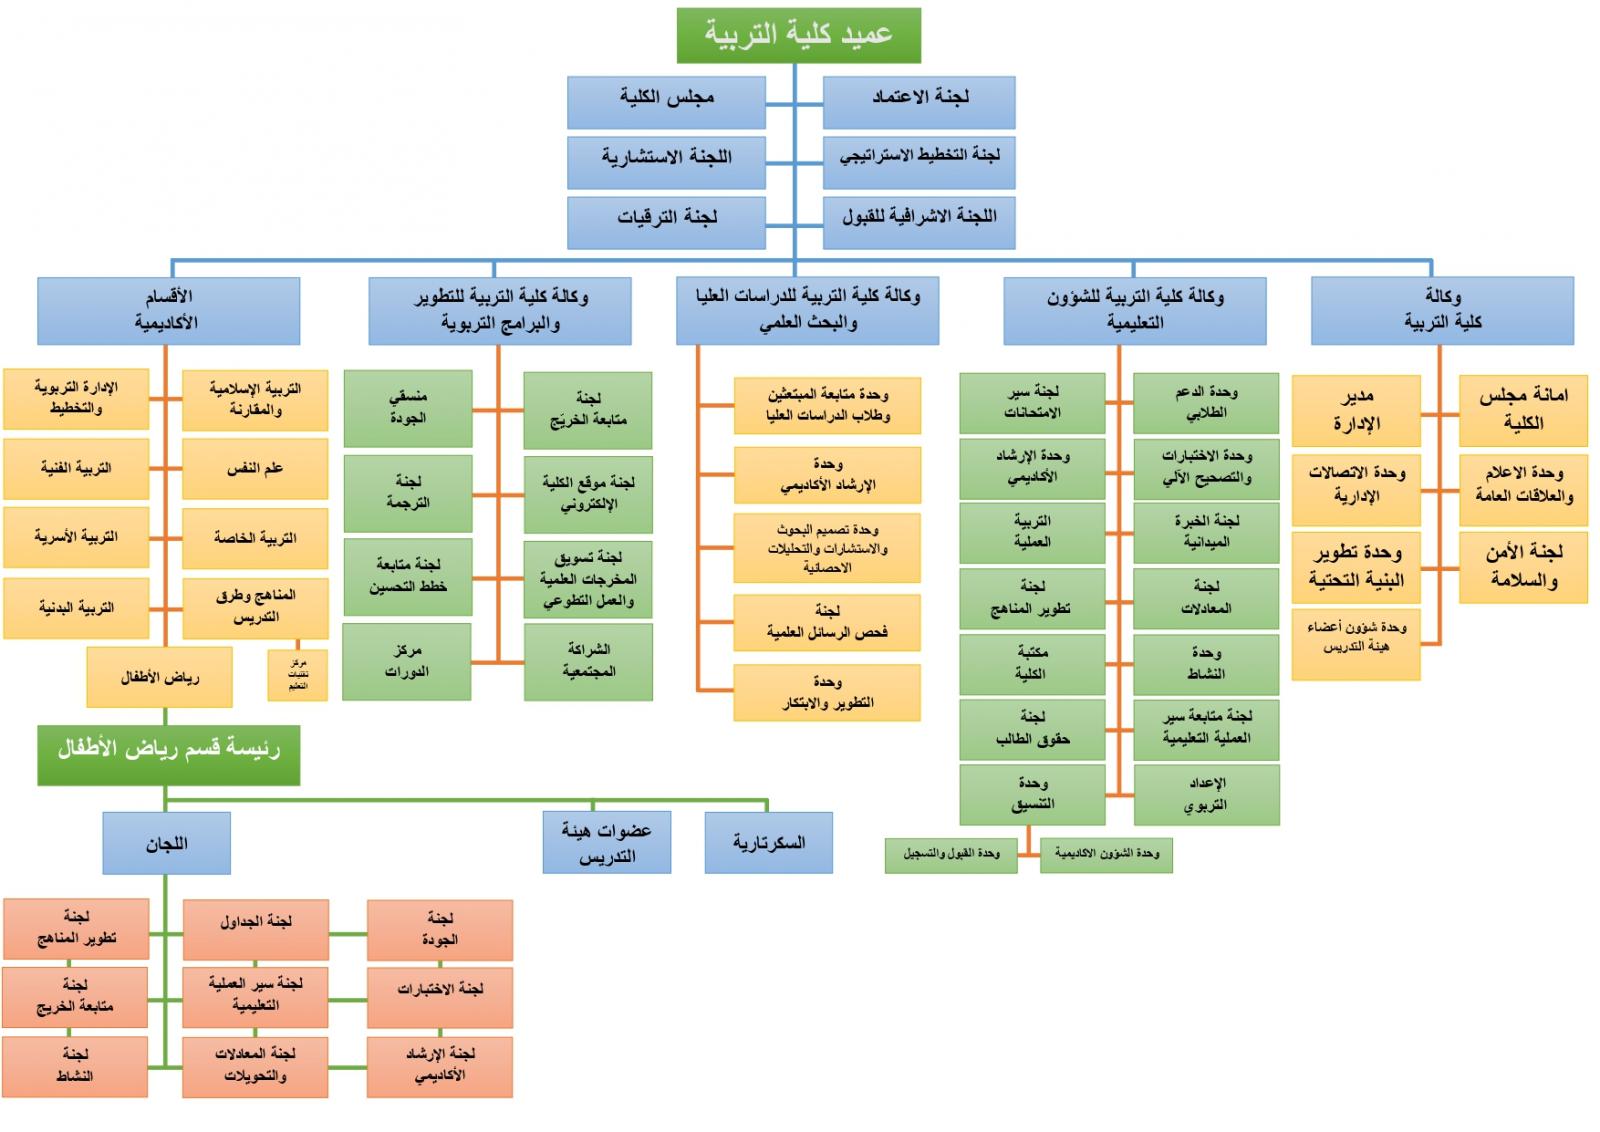 الهيكل التنظيمي رياض الأطفال كلية التربية جامعة أم القرى